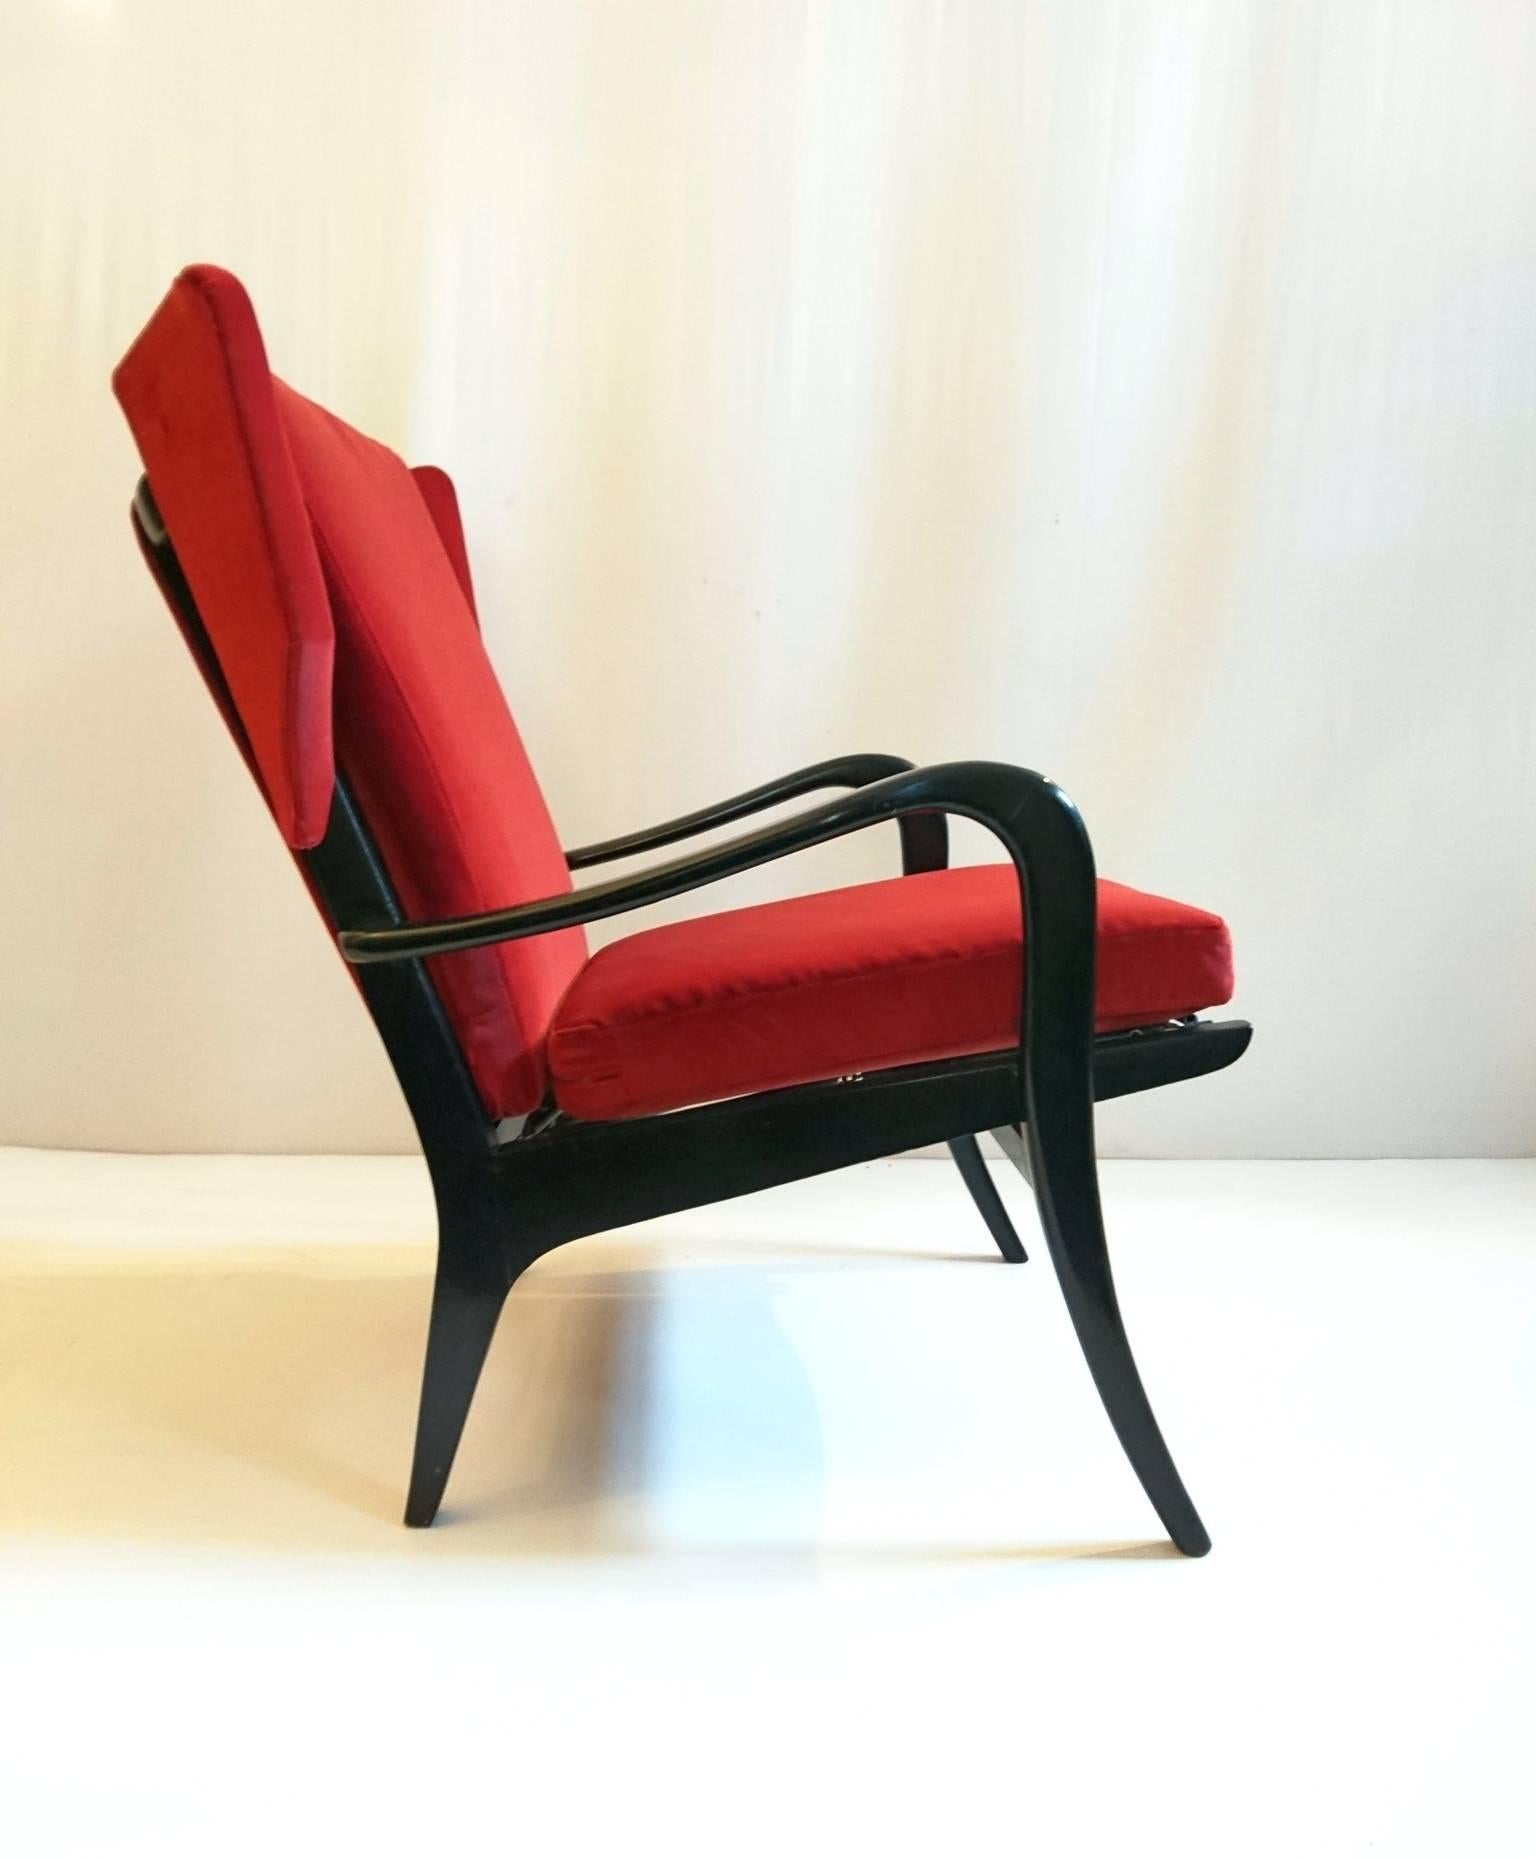 Eleganter und komfortabler Sessel, der sowohl in der Konstruktion als auch in der Holzausführung und in der Polsterung professionell restauriert wurde. Schwarzer Holzrahmen mit dem originalen patentierten Free-span-System (siehe Bild) mit einem